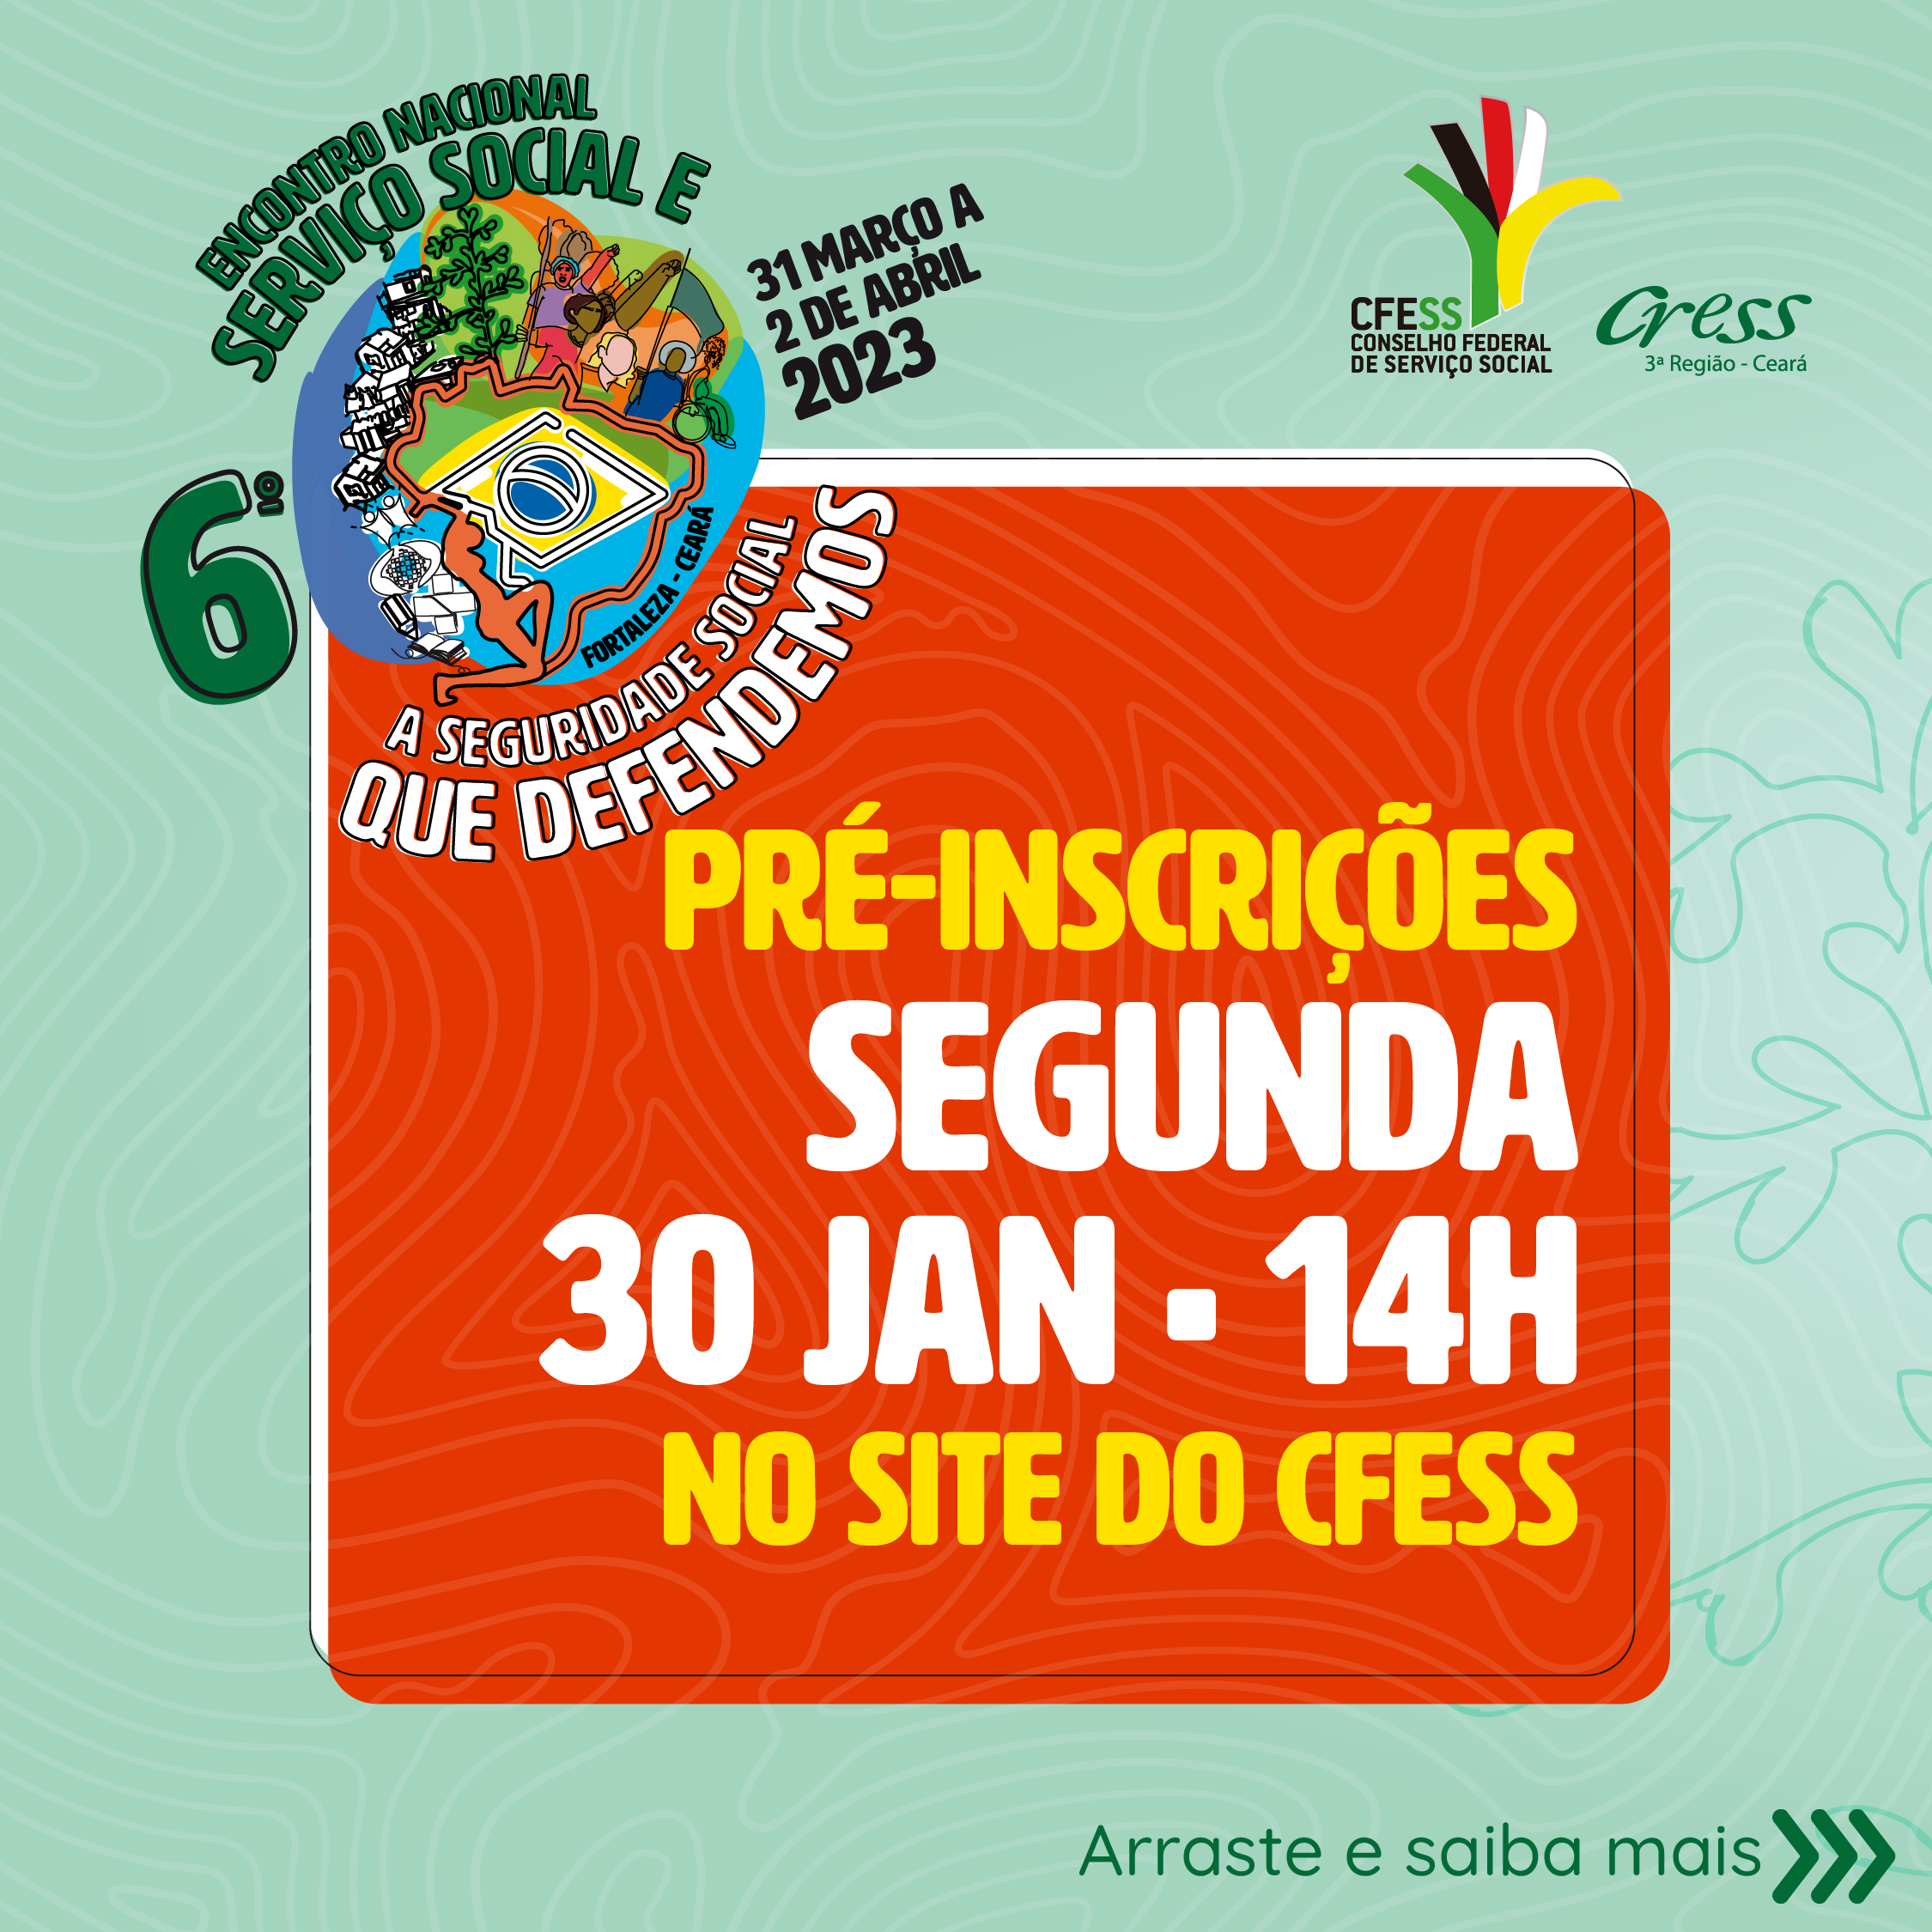 Card verde traz logo do evento, uma série de imagens coloridas, como o mapa do Brasil, pessoas mobilizadas, símbolos das políticas sociais e o Código de Ética. 